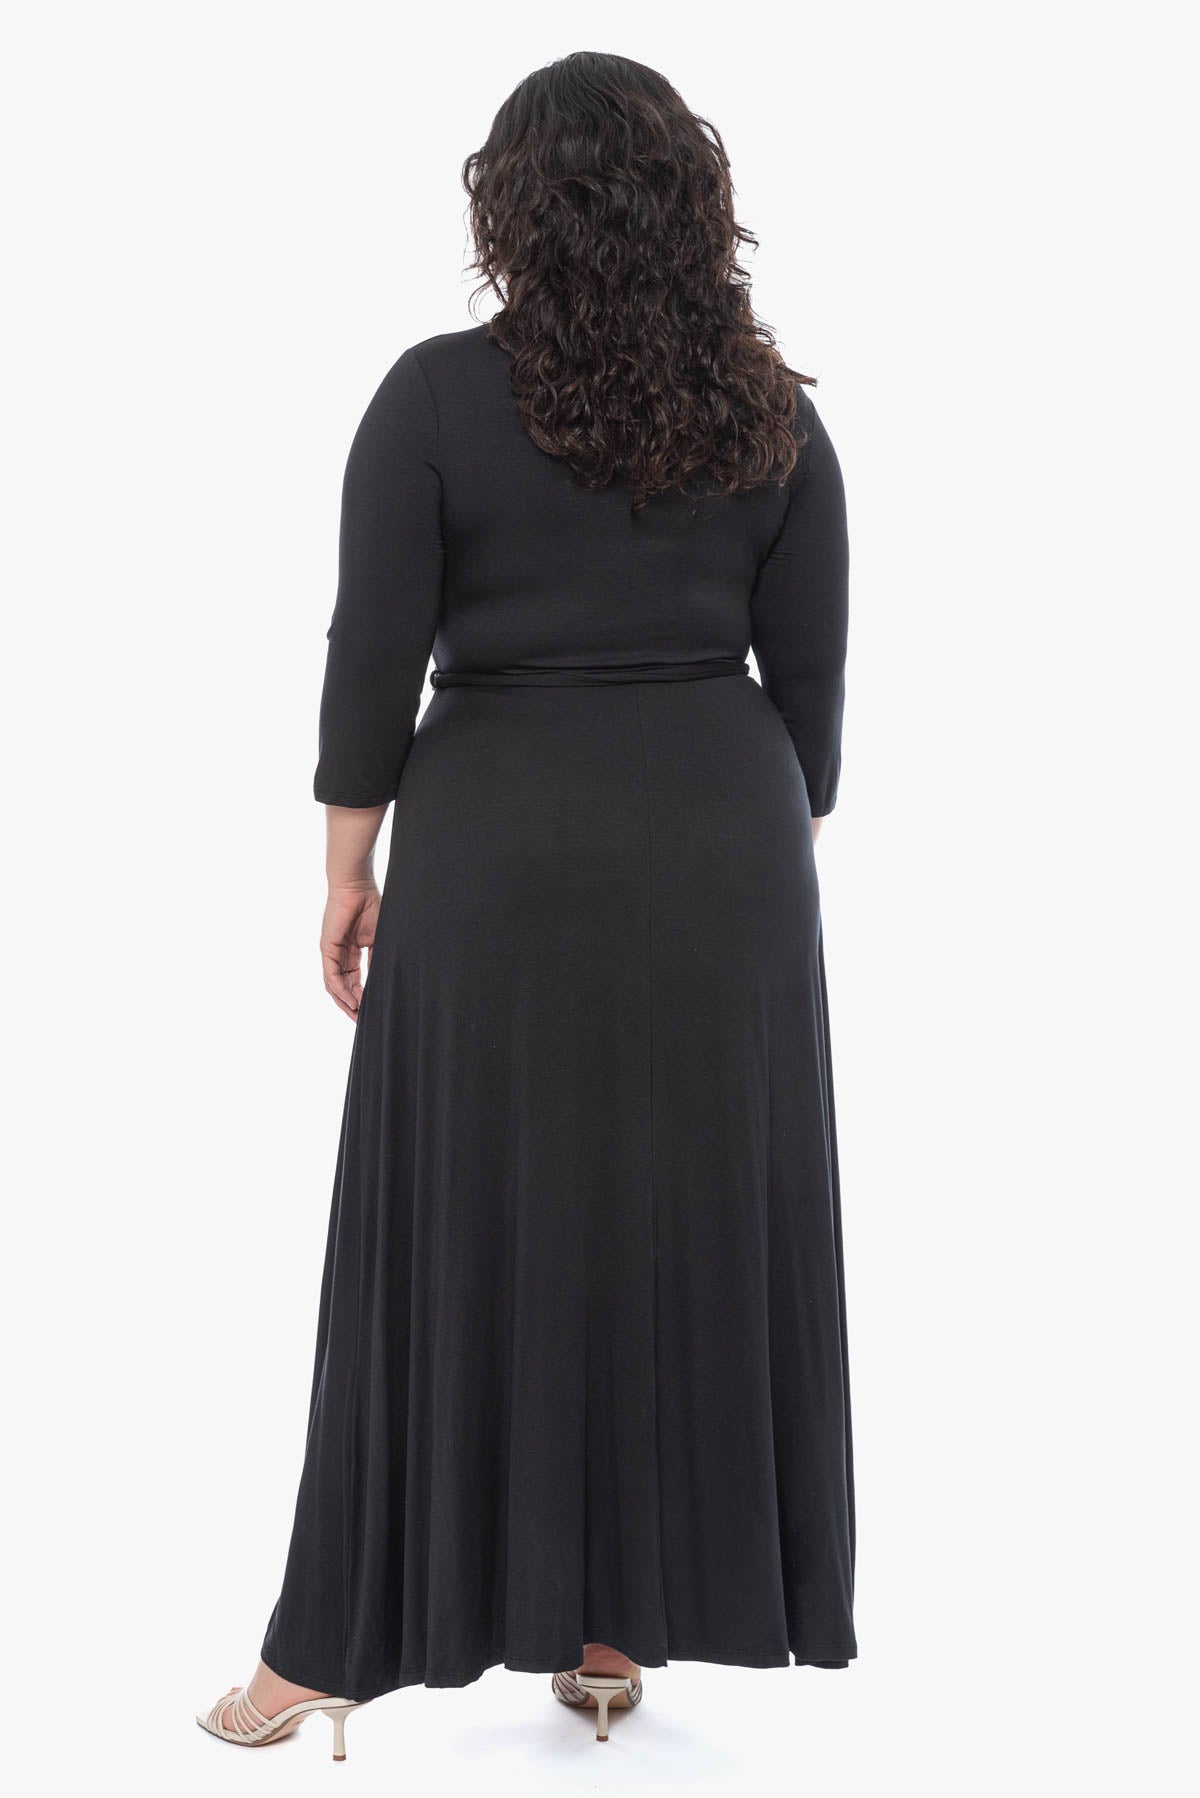 שמלת ערב ANNA שחורה